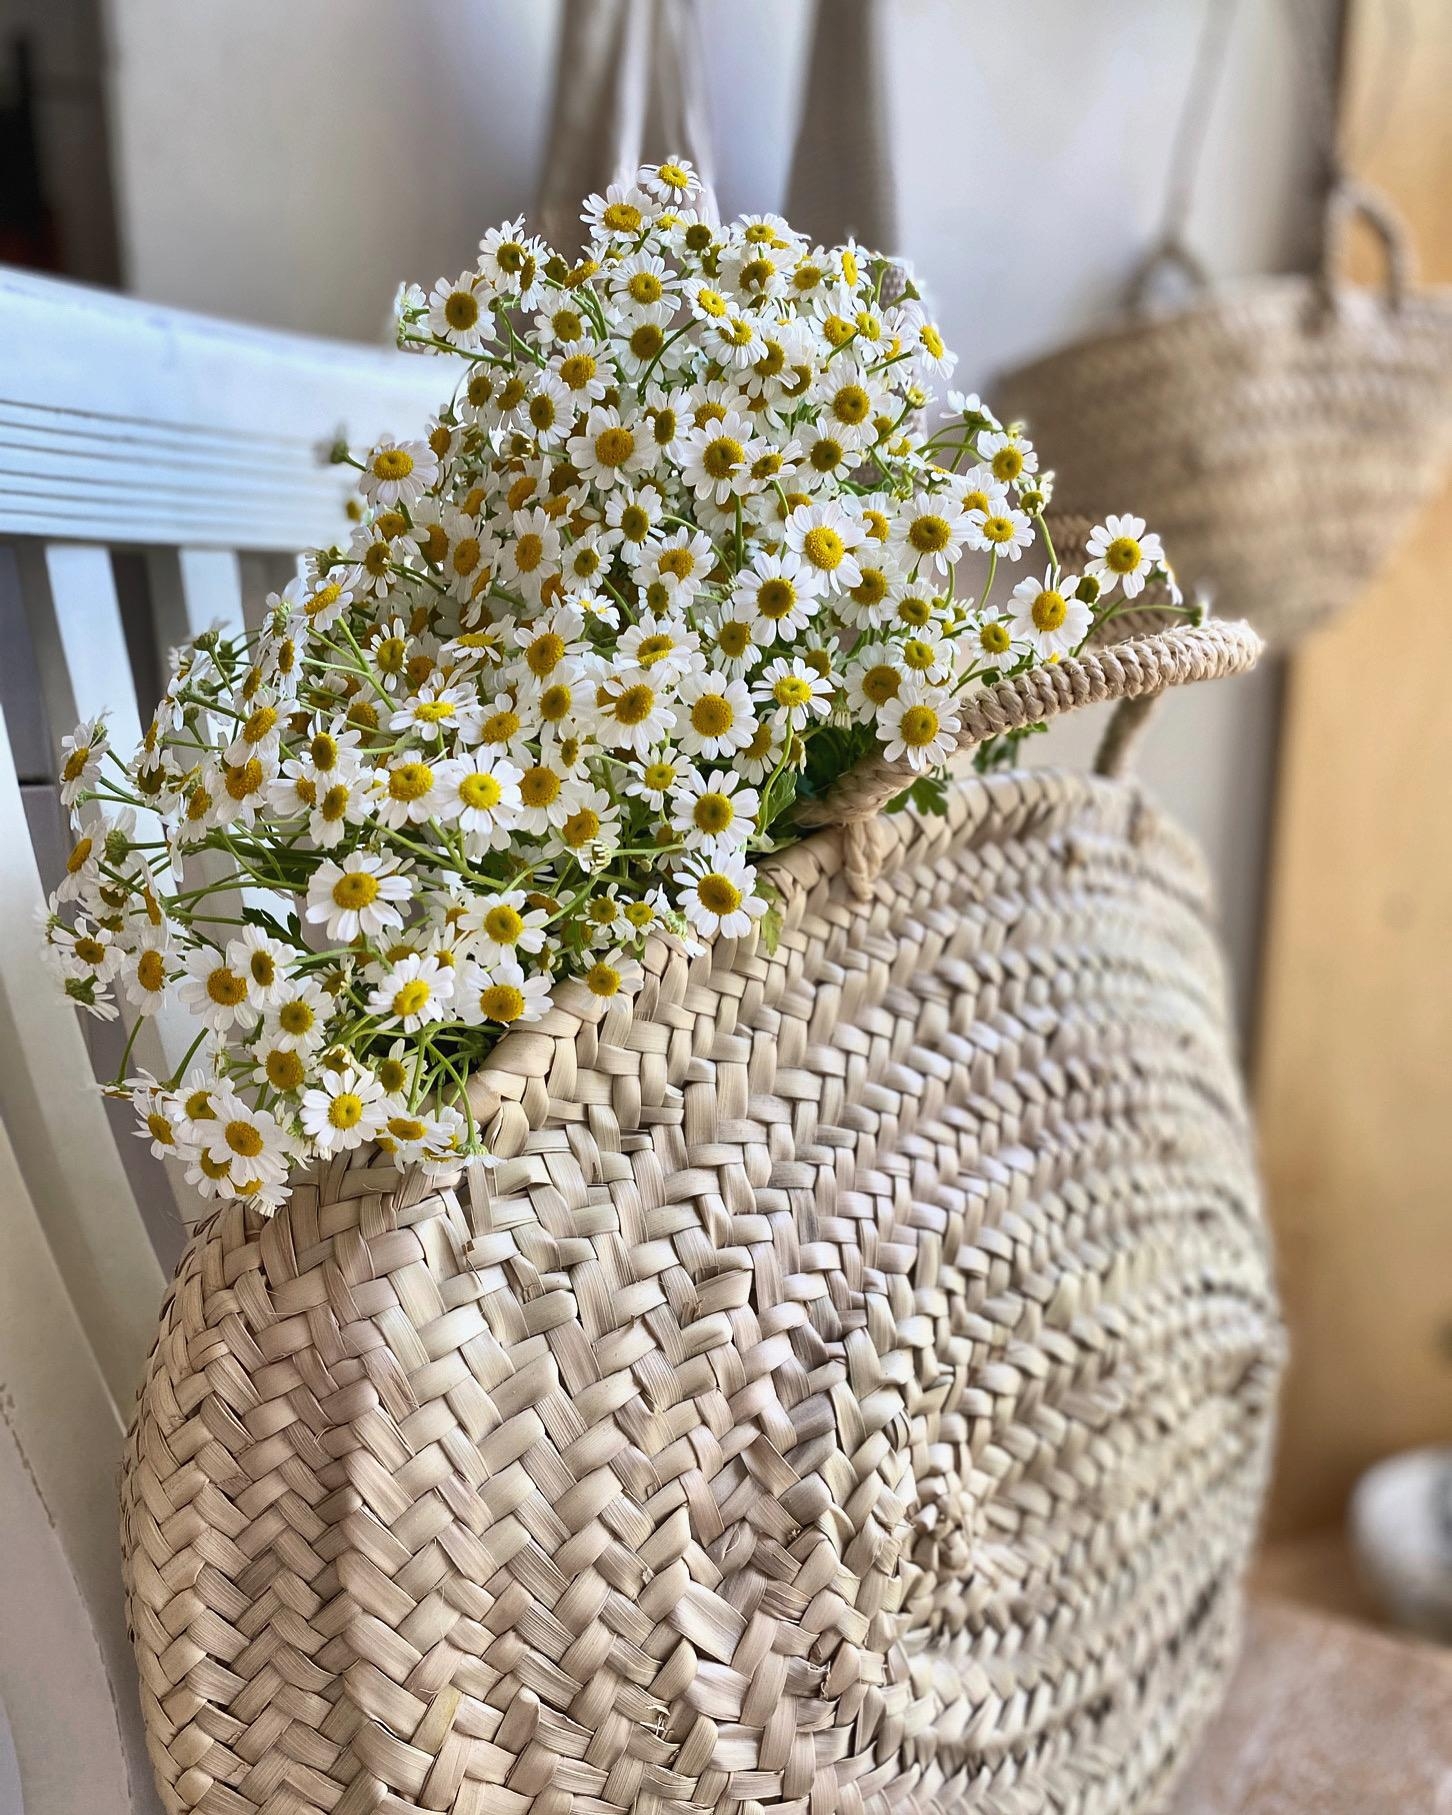 Eine Korbtasche voll mit Blumenglück! Happy Friday 🌼💛🌼
#blumen#freshflowers#couchliebt#couchstyle#interior#hygge